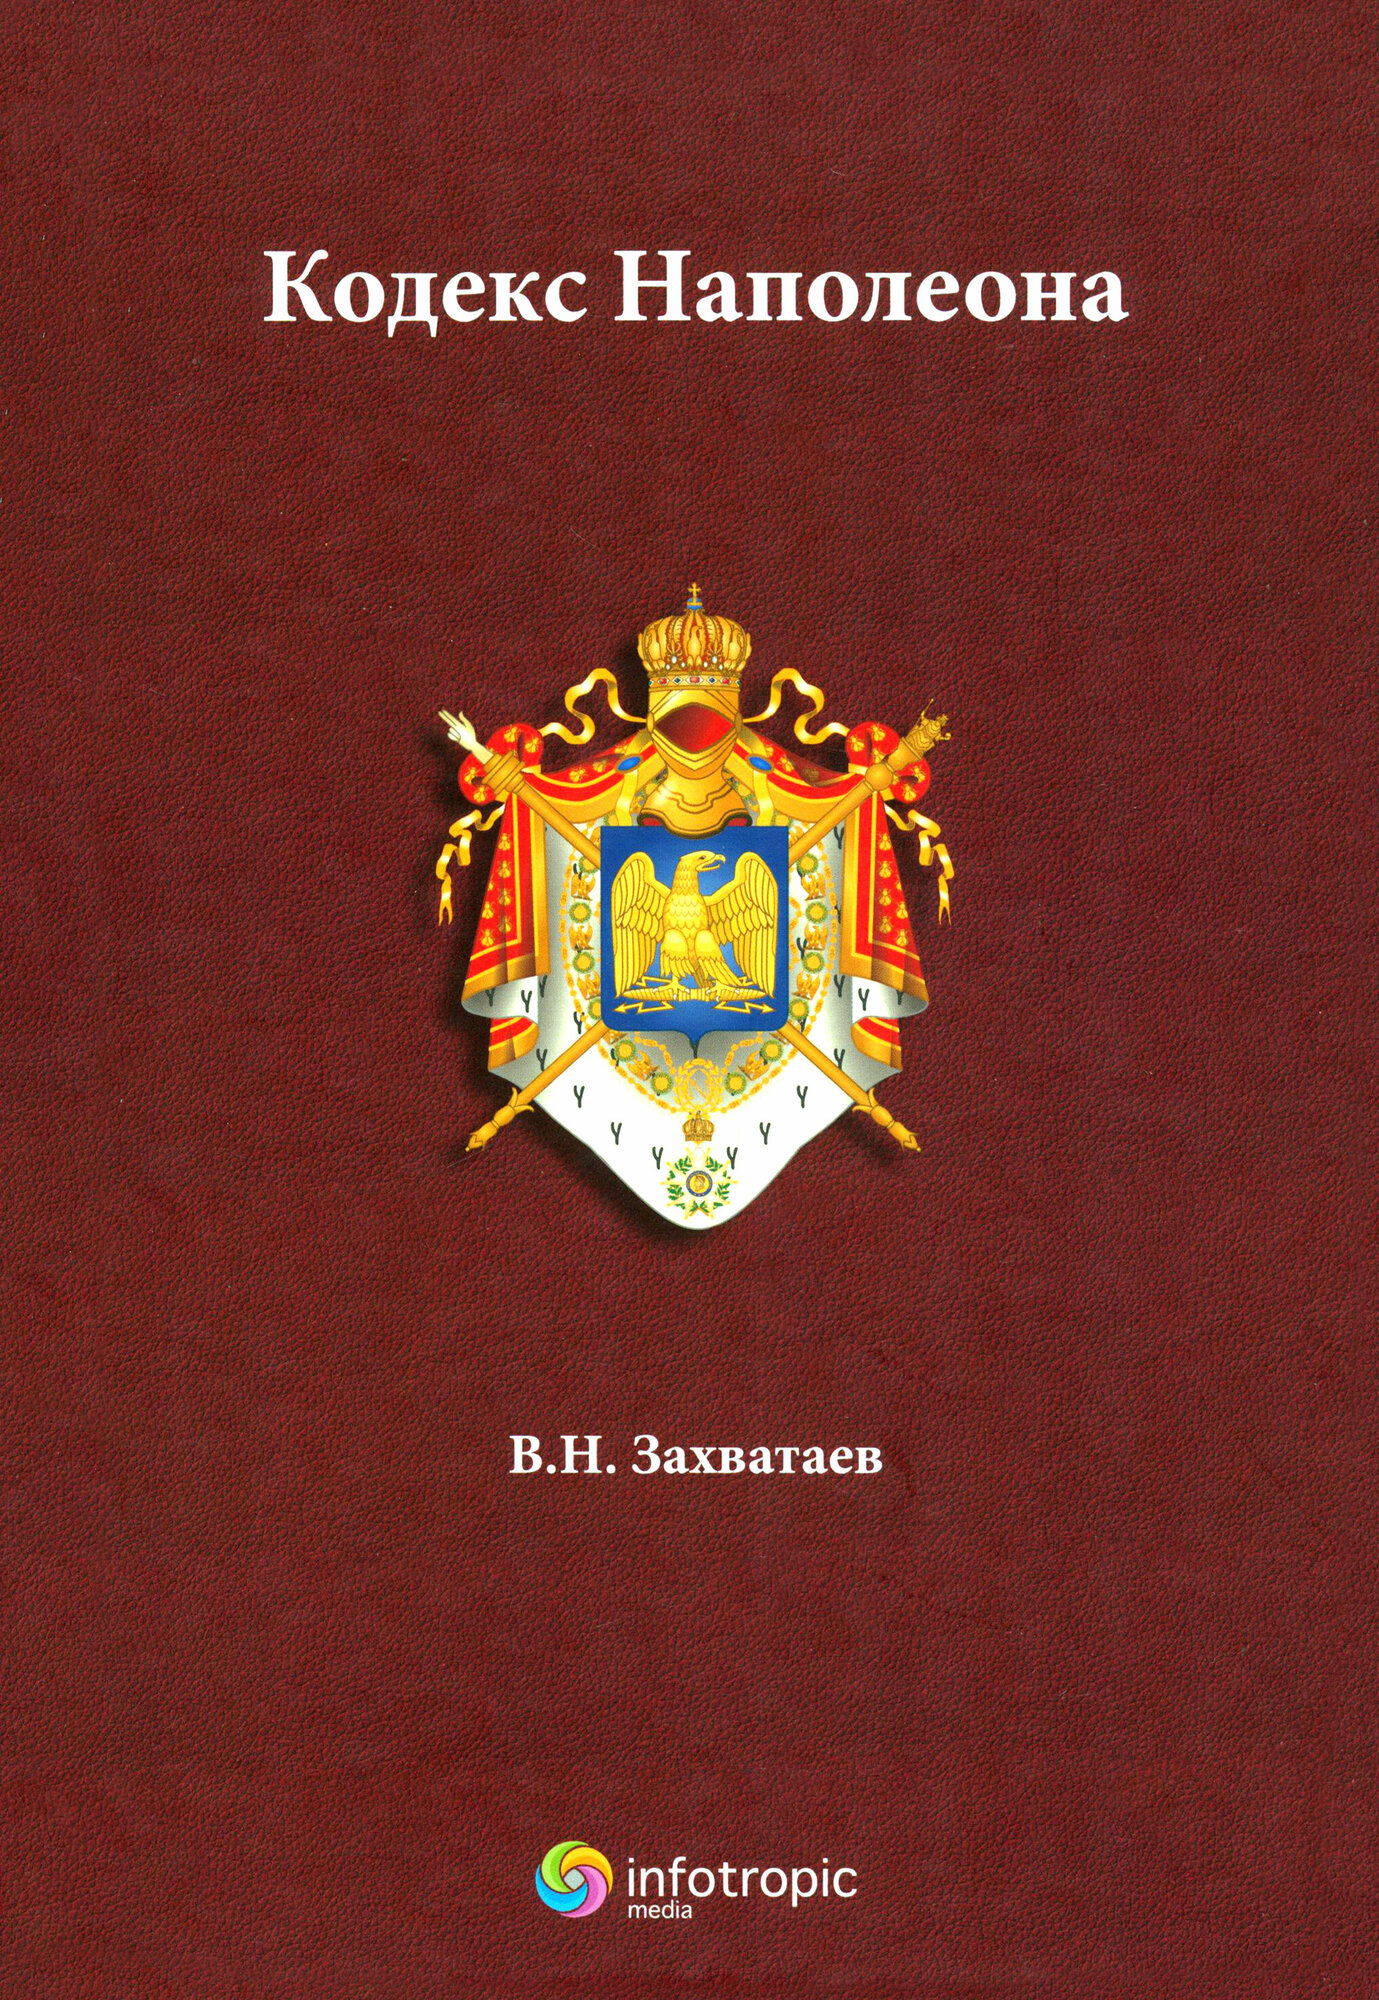 Кодекс Наполеона (Захватаев, Никитович) - фото №2